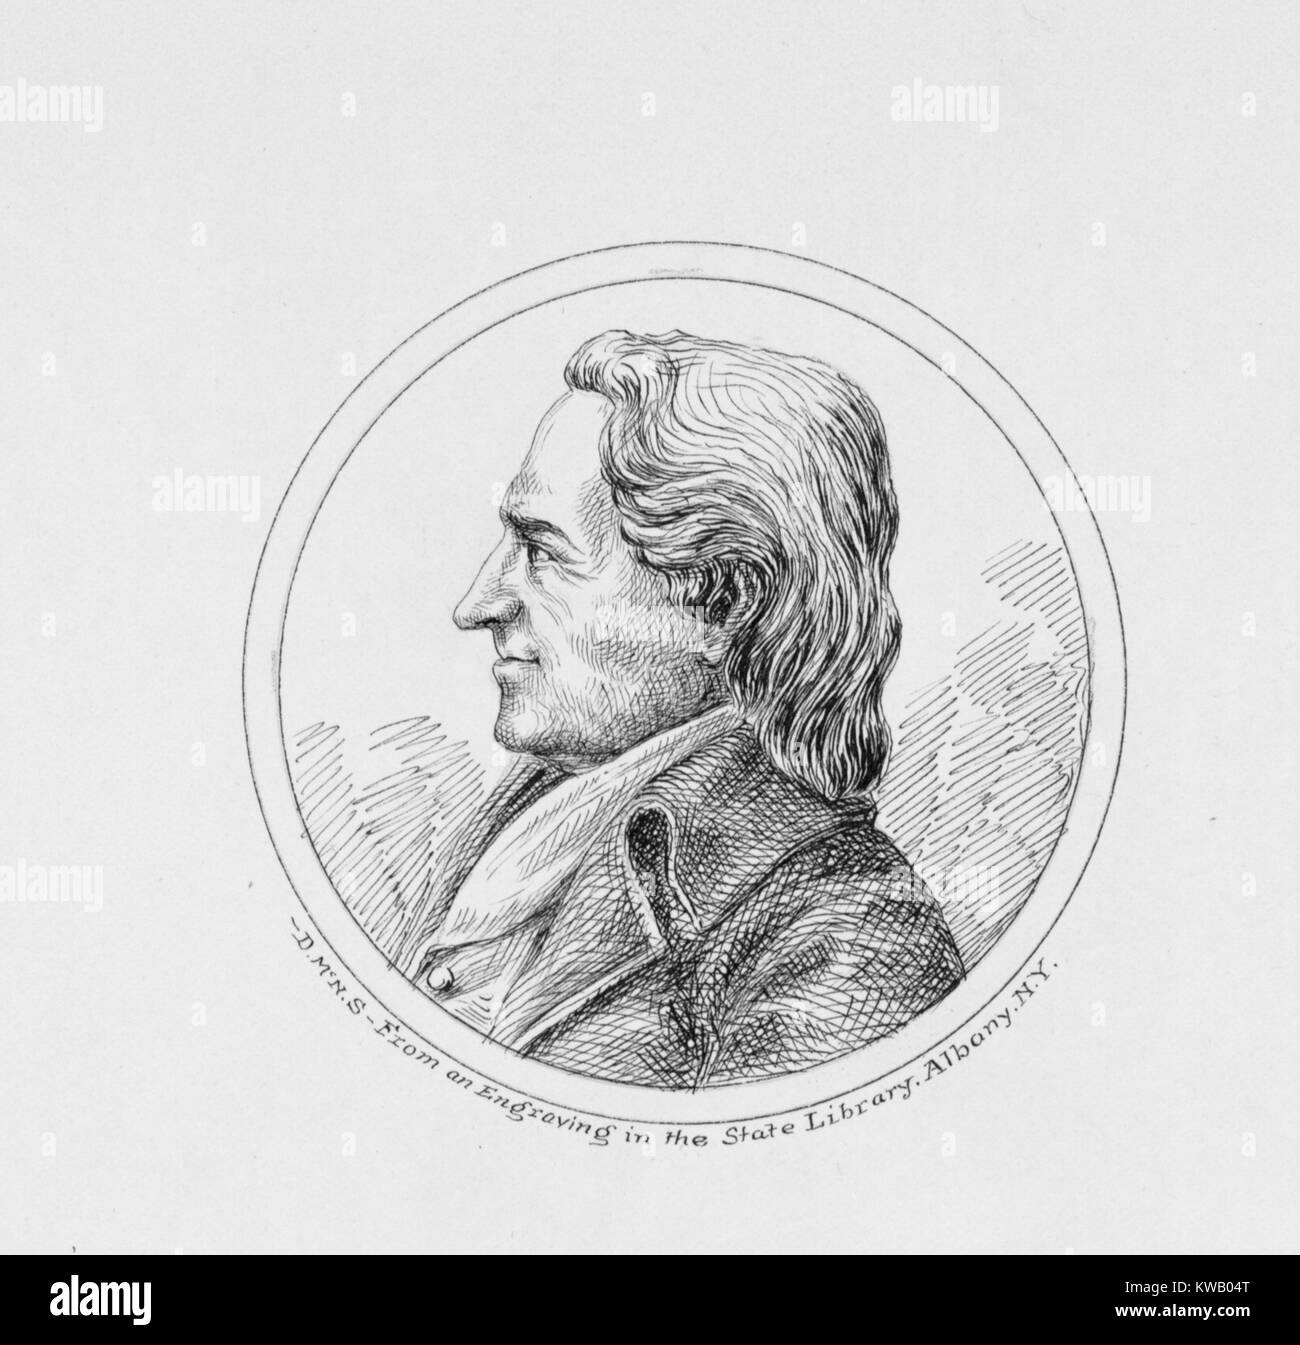 Portrait gravé d'Esdras L'Hommedieu, avocat et délégué au Congrès continental qui a occupé diverses fonctions politiques à New York, 1836. À partir de la Bibliothèque publique de New York. Banque D'Images